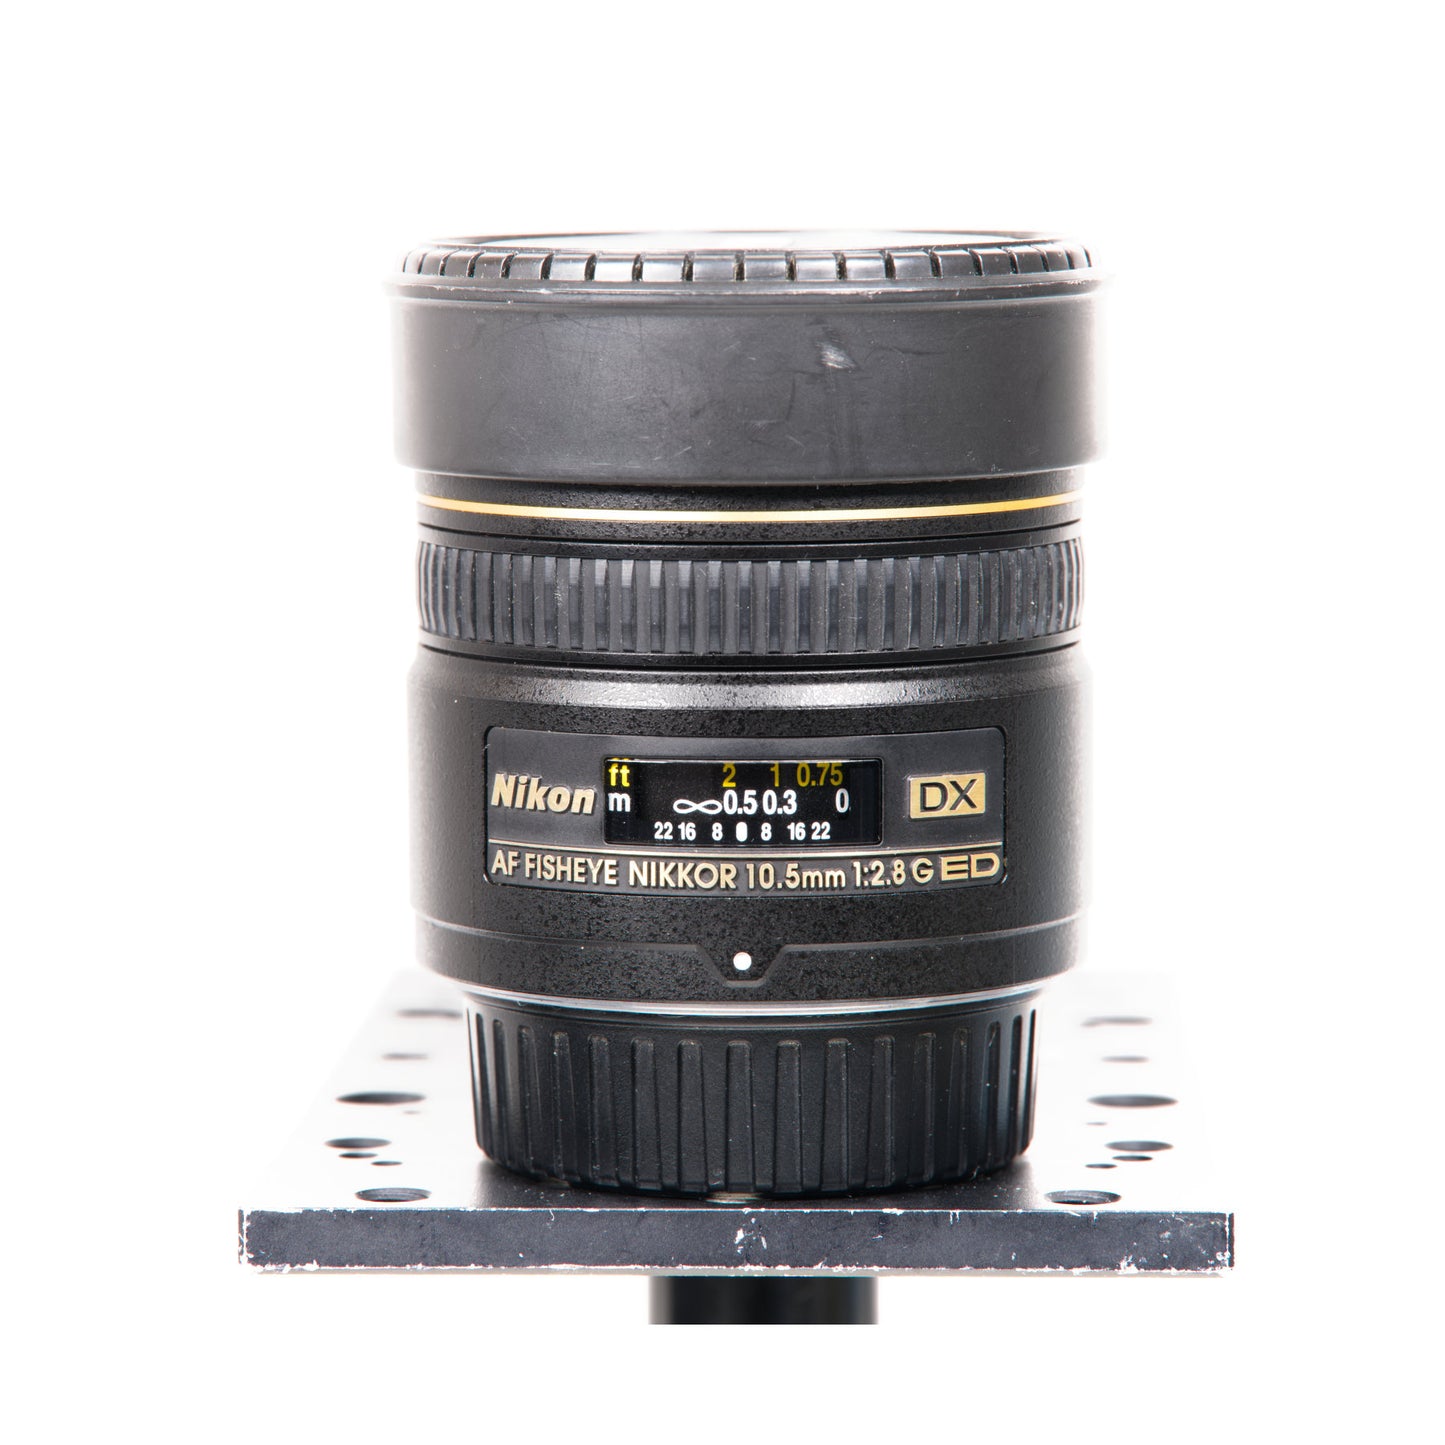 Buy Nikon AF DX Fisheye-NIKKOR 10.5mm f/2.8G ED Lens at Topic Store 